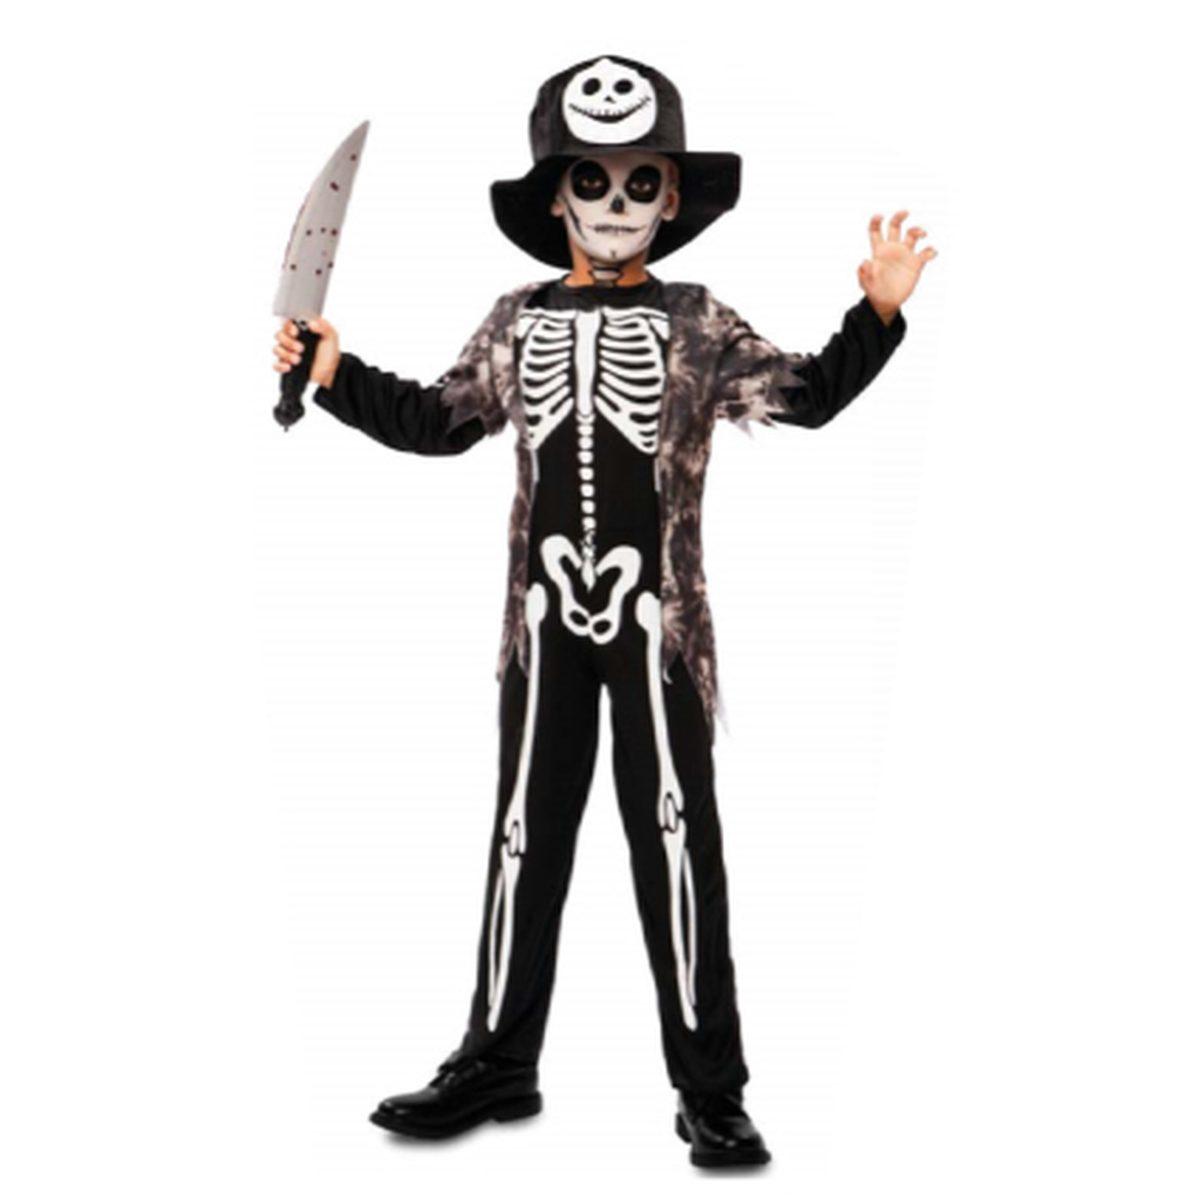 Costume Scheletro Bambino in Vendita su M2Store.it: Ideale per Halloween